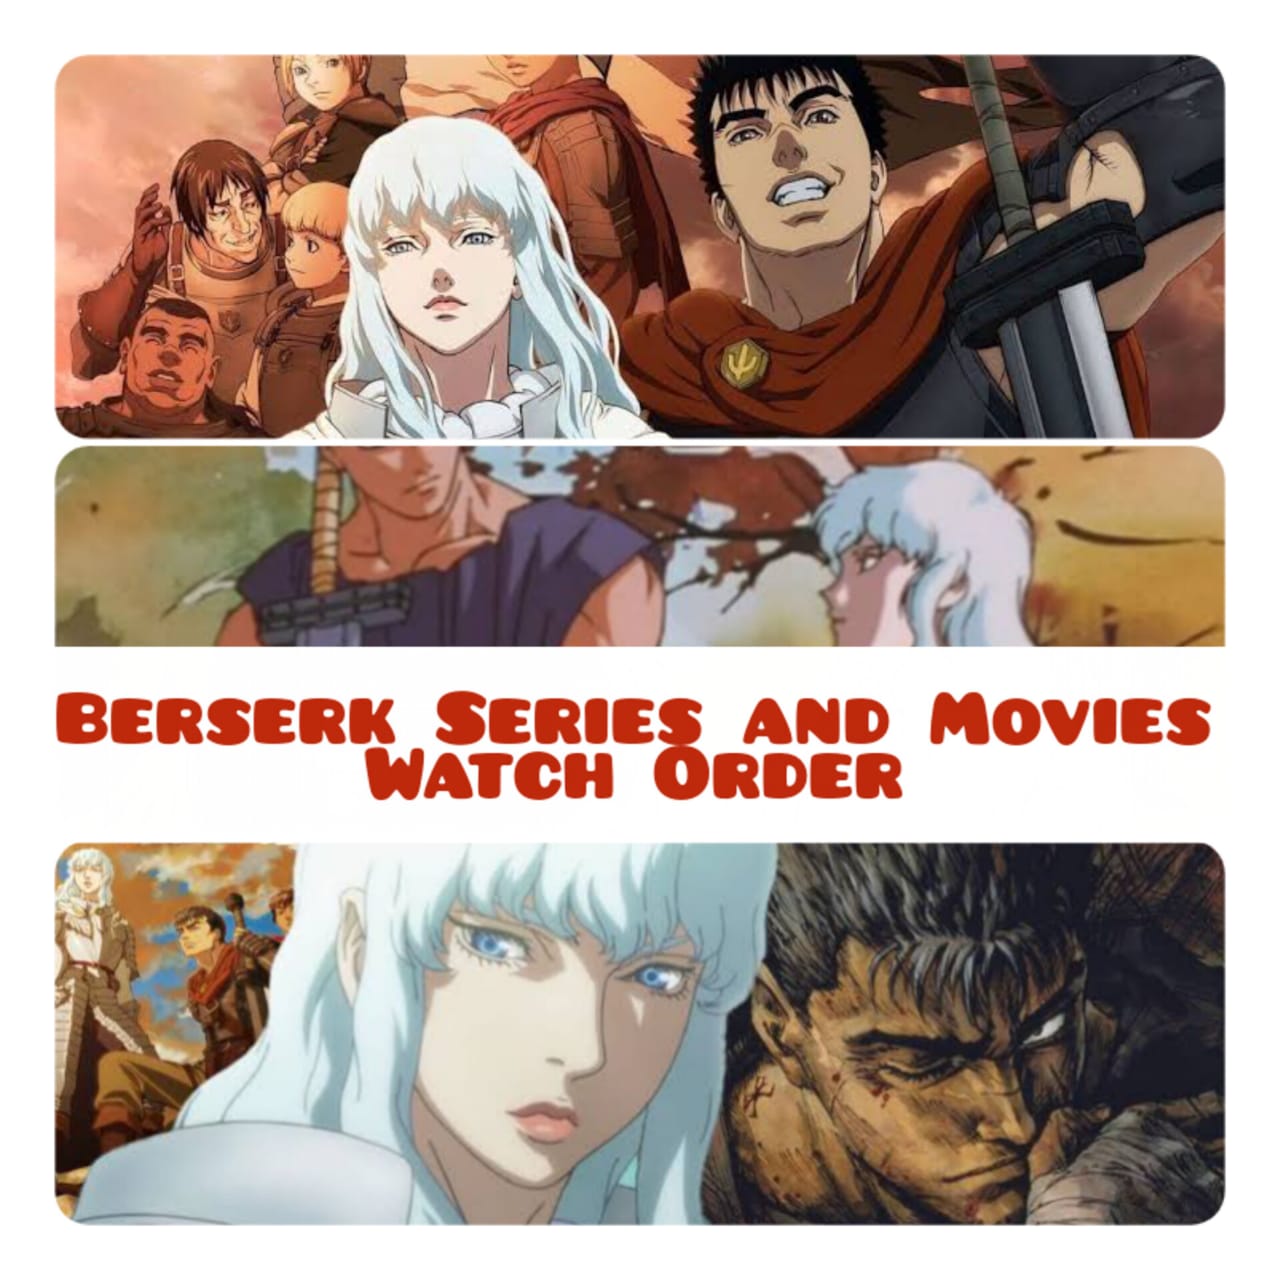 Every Berserk Movie & Series (In Chronological Order)